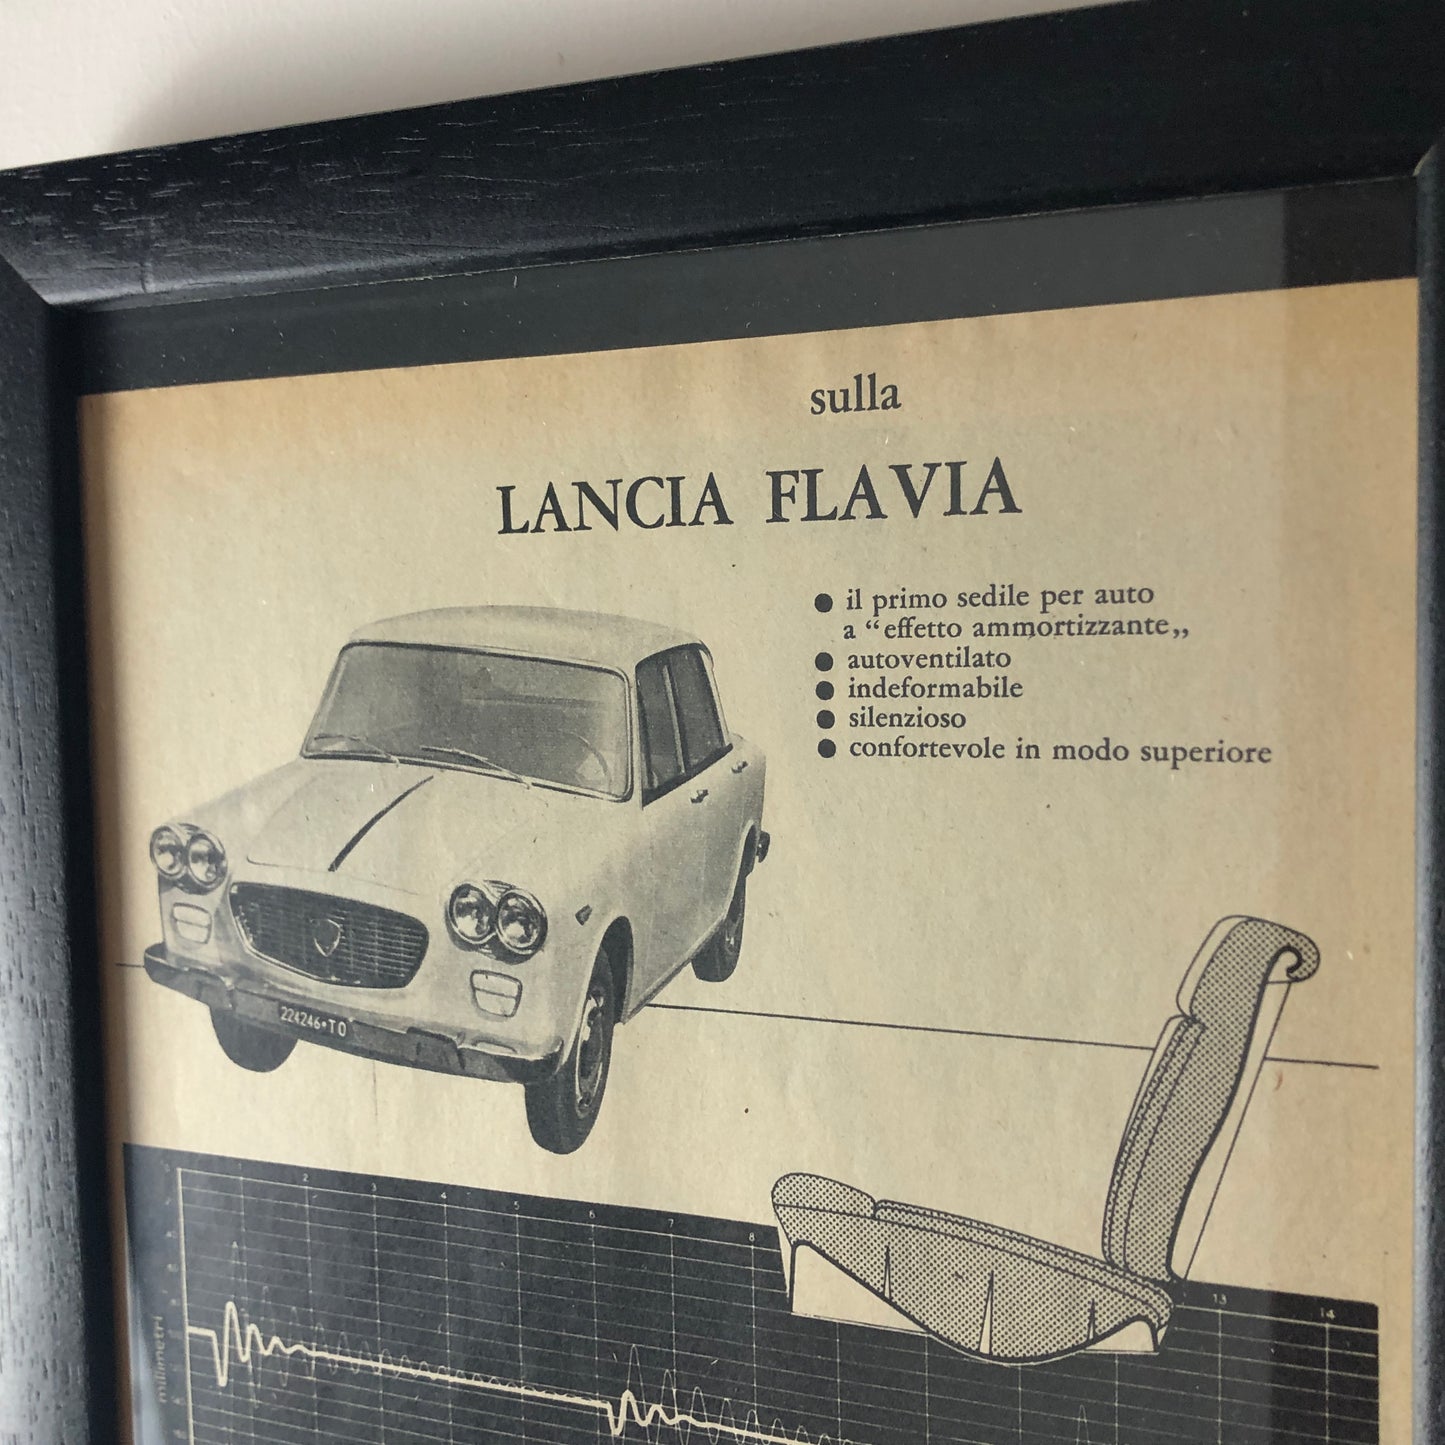 Pirelli e Lancia, Pubblicità Anno 1960 la Lancia Flavia è Equipaggiata con il Primo Sedile a "Effetto Ammortizzante" Pirelli